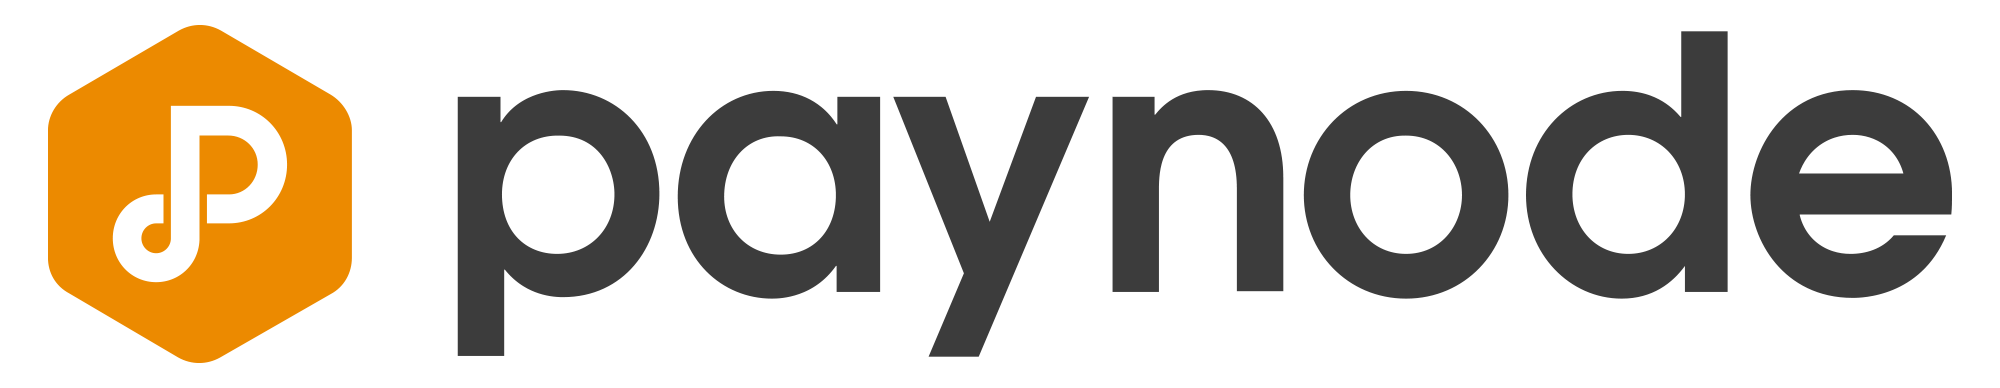 Paynode logotype